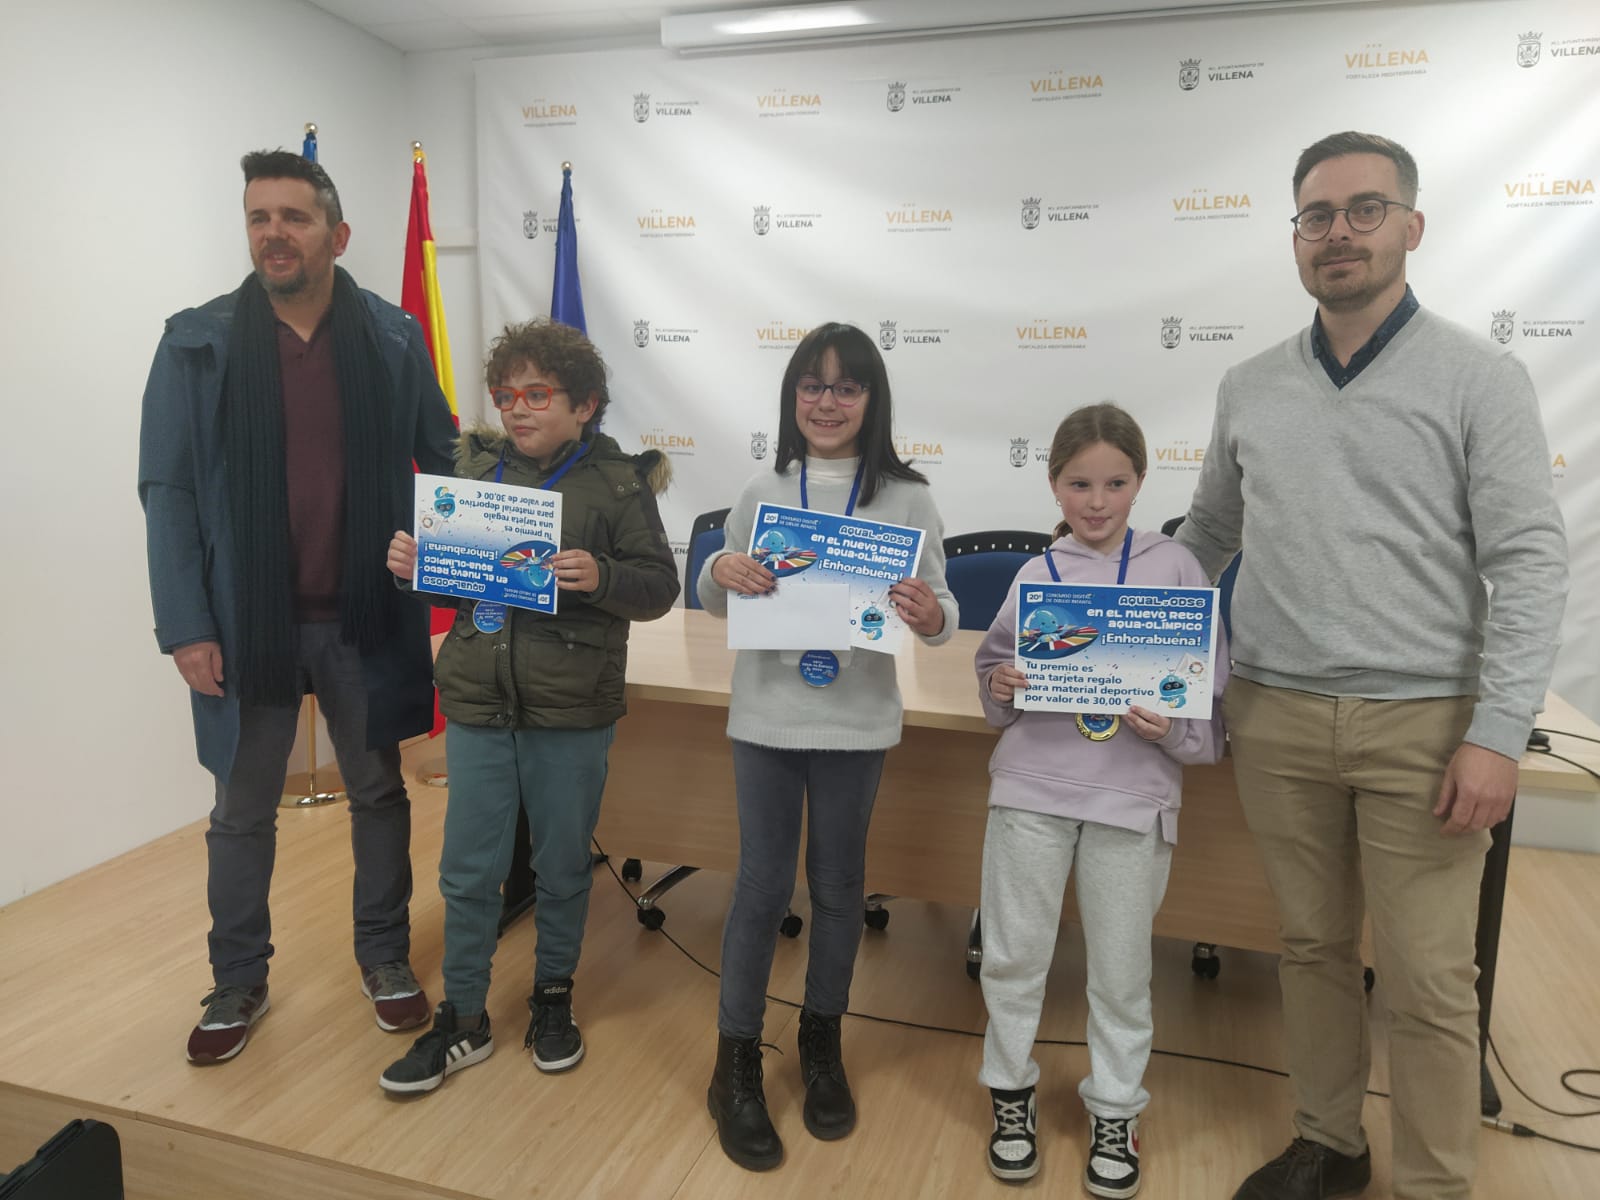 Los estudiantes de Villena Jacobo Mira, Fabiola del Rey y Sofía Flor ganan el concurso convocado por Aqualia